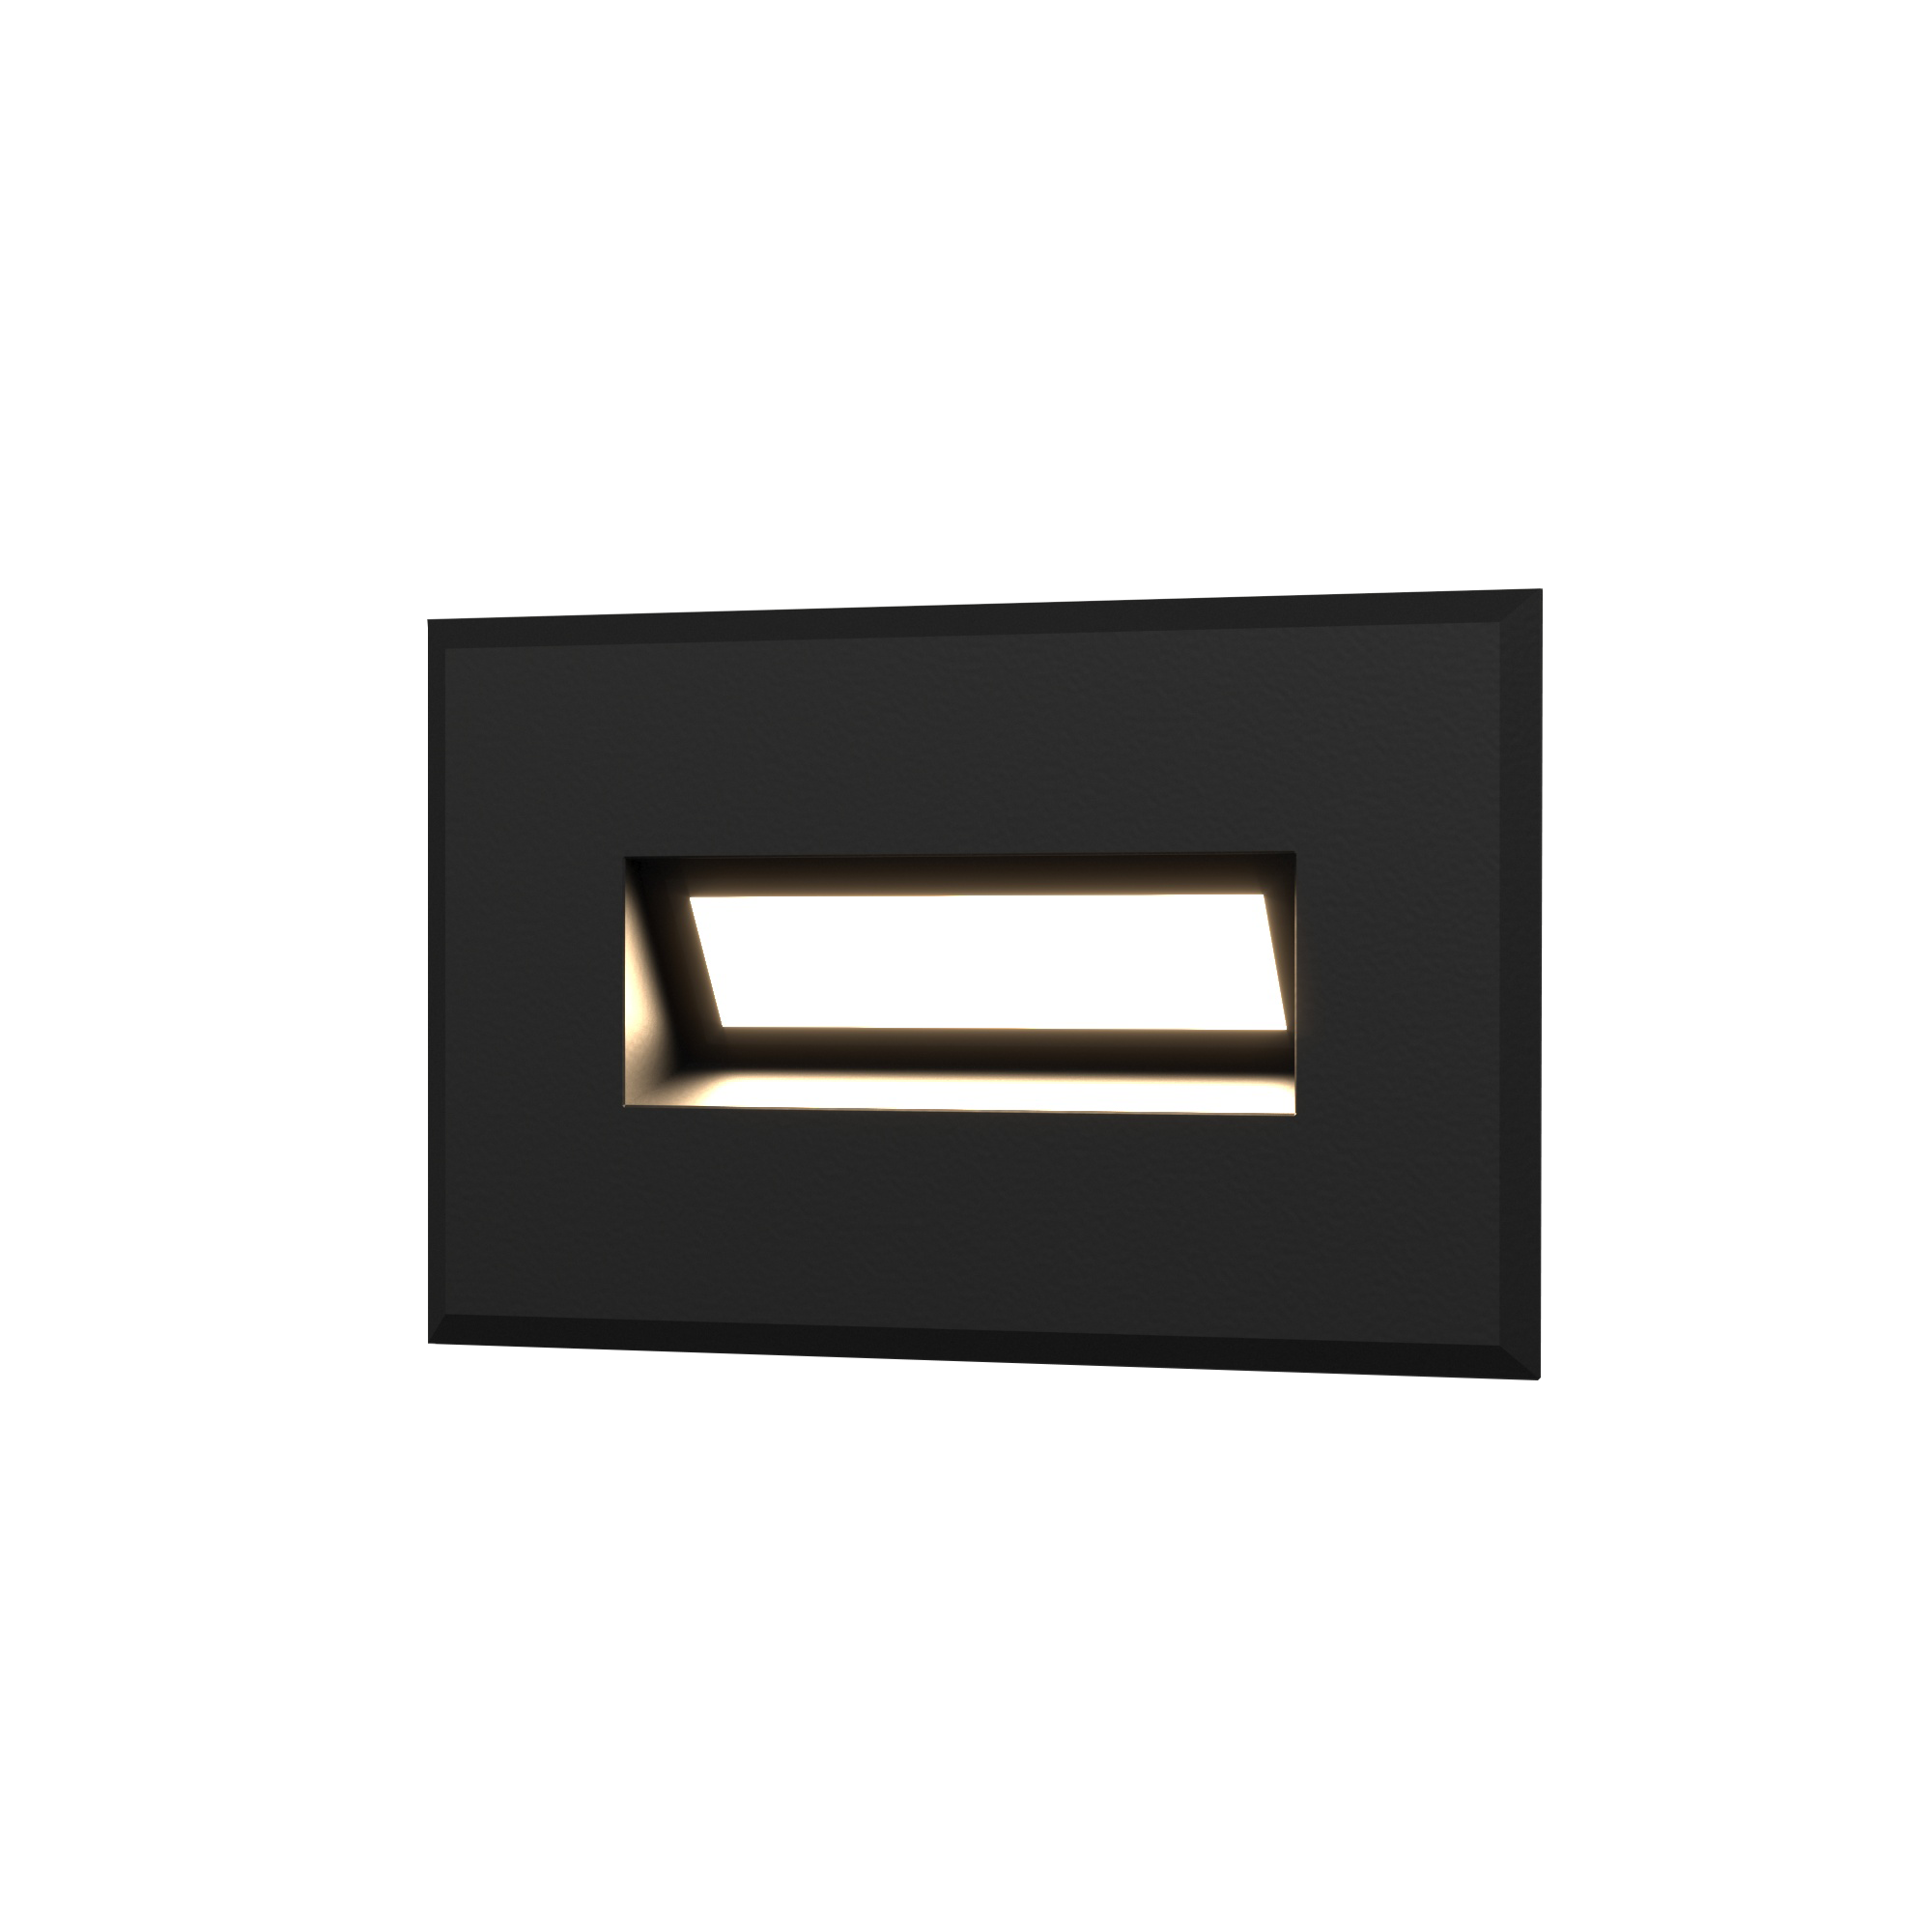 92728713 Светильник точечный светодиодный встраиваемый Step 7 a049756, 1 м², нейтральный белый свет, цвет черный STLM-0544404 ELEKTROSTANDARD